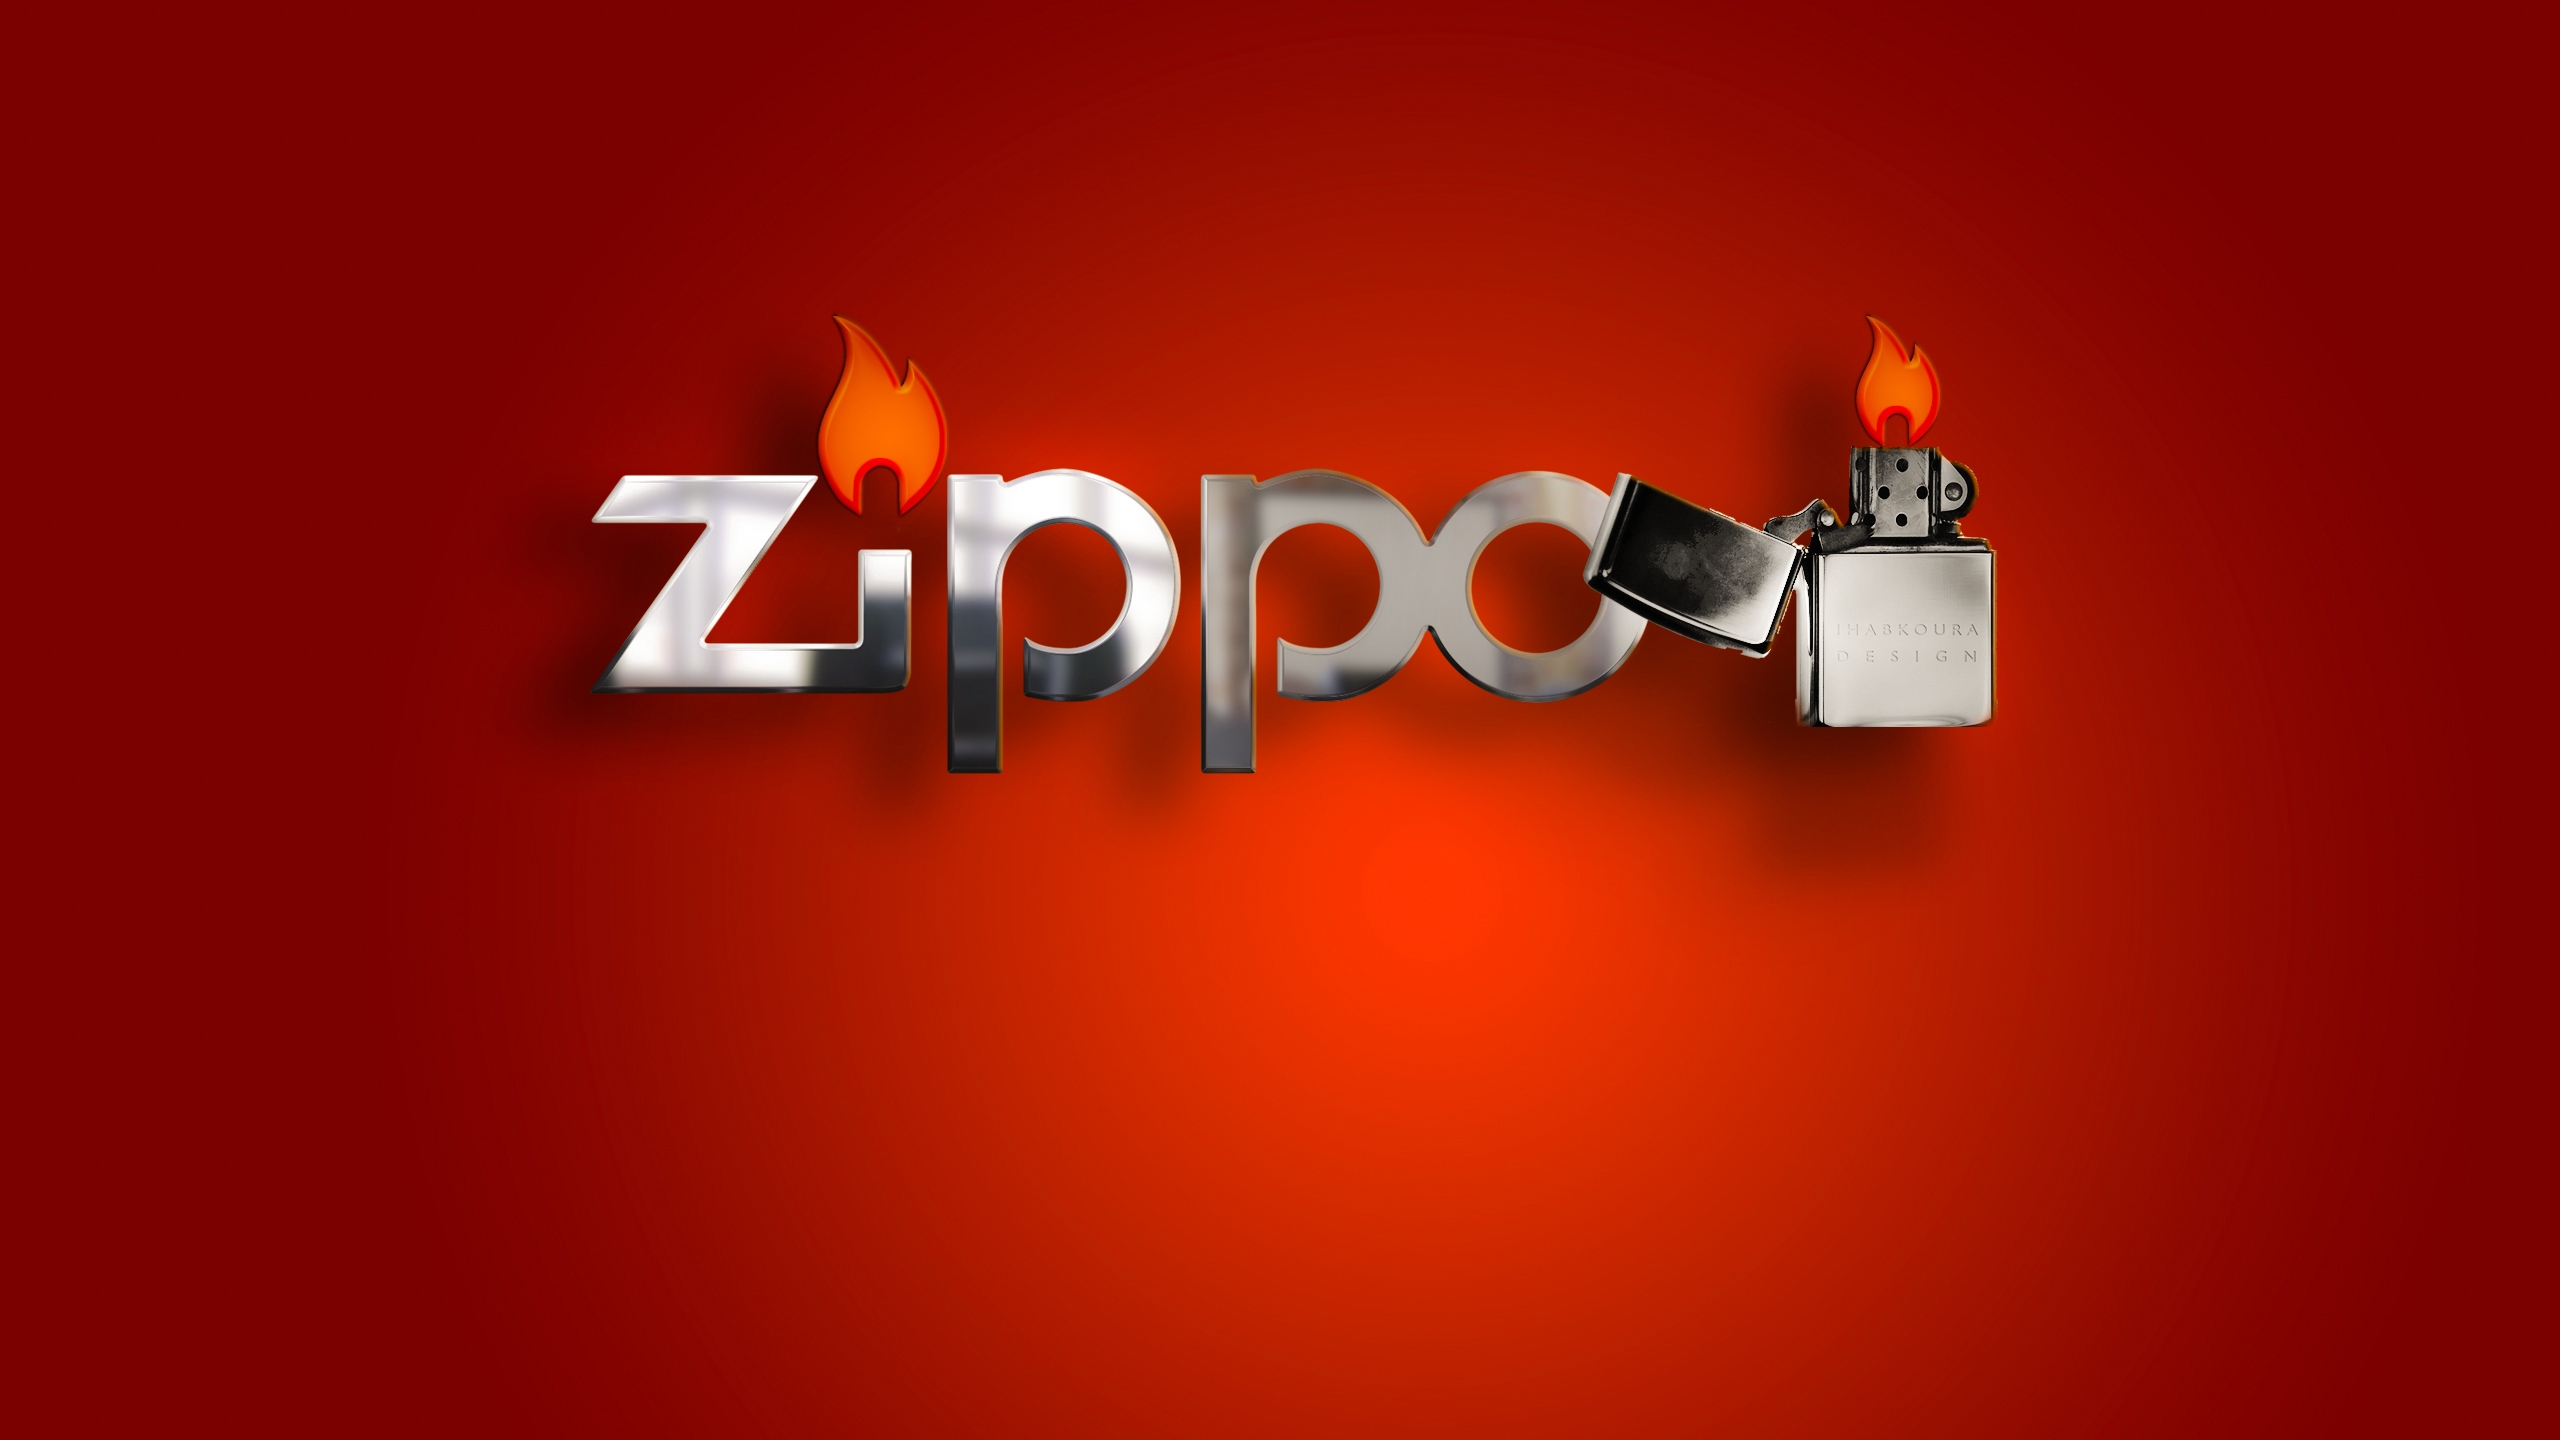 Zippo Lighter Hd Wallpaper Wallpaperfx